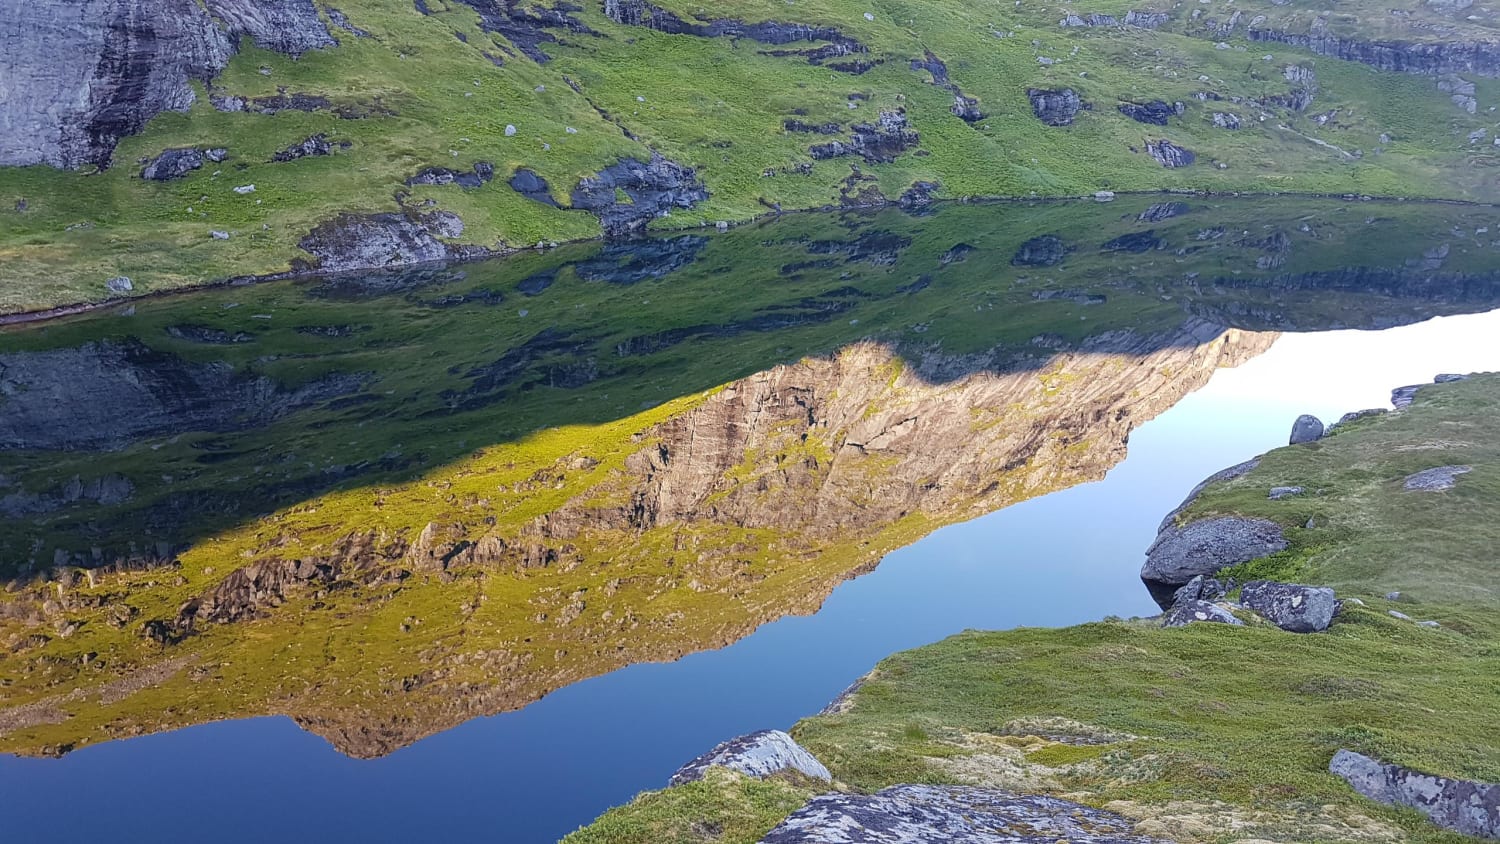 Mirror like reflection in a tarn - Lofoten Islands OC